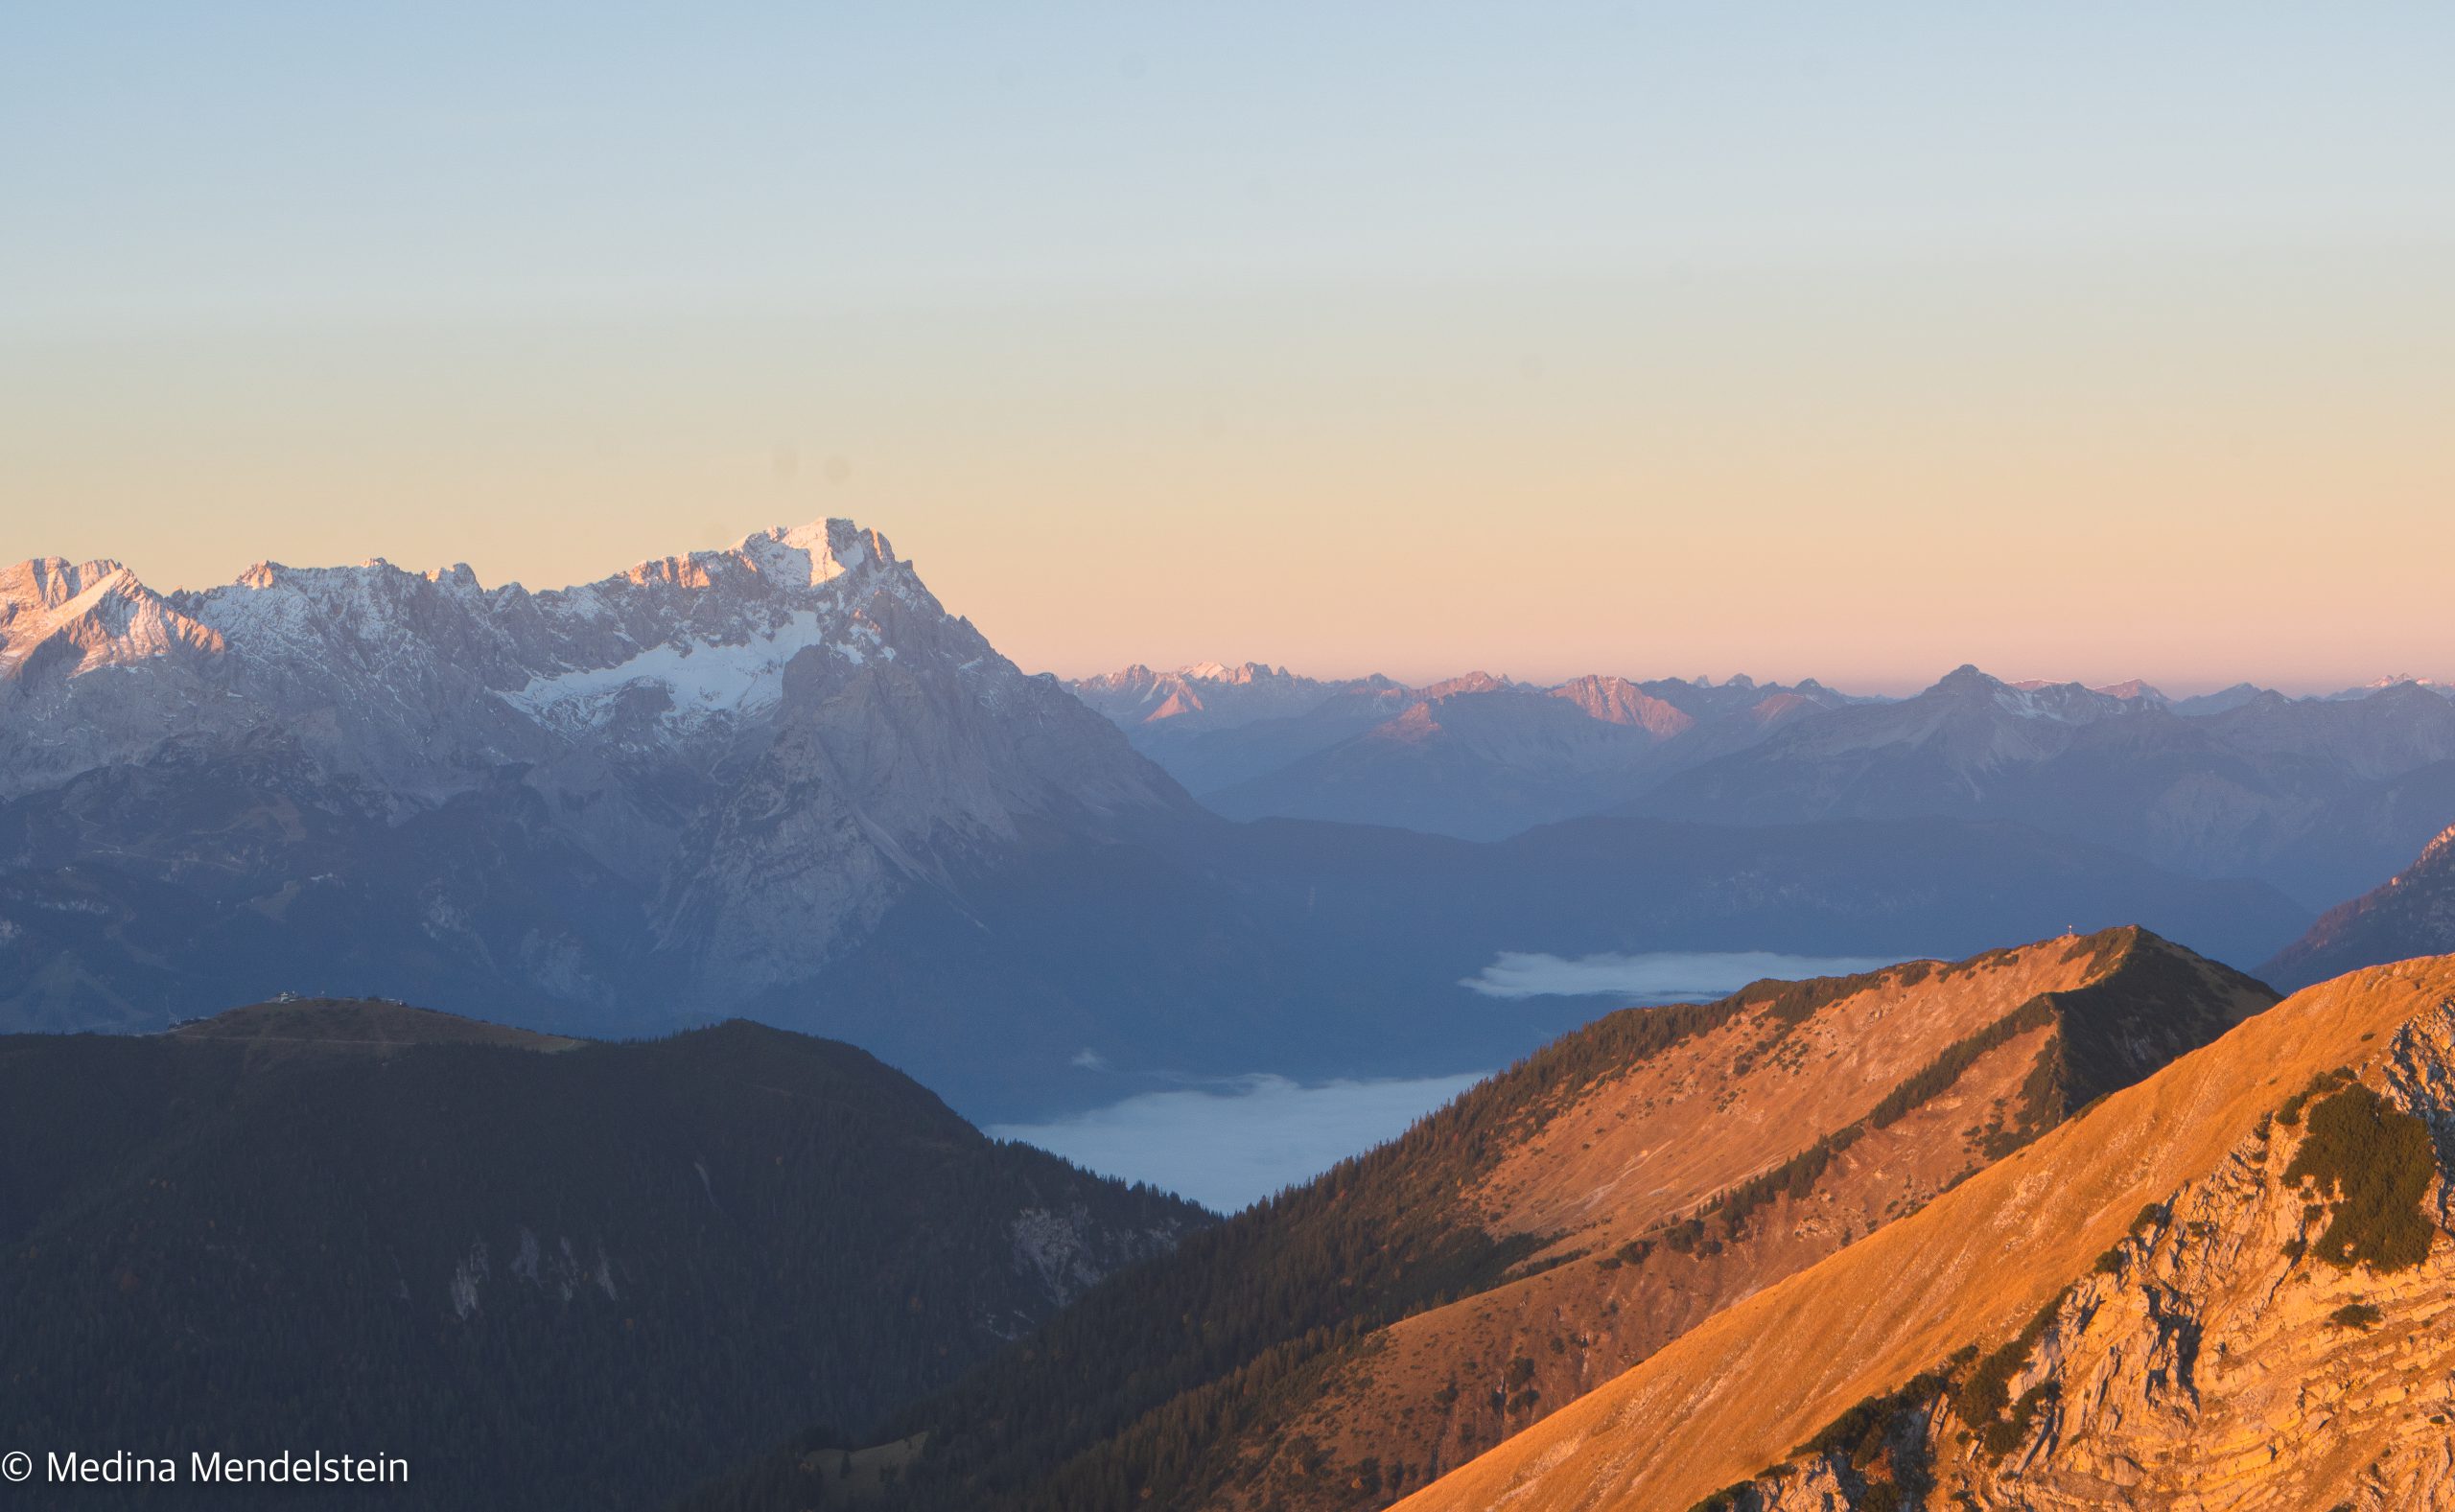 Alpenglühen im Estergebirge. Im Vordergrund ist ein Berghang, der vom Sonnenlicht rot gefärbt ist. Im Hintergrund ist eine Bergkette, die leicht mit Schnee bedeckt ist. Der Himmel ist rot-blau.